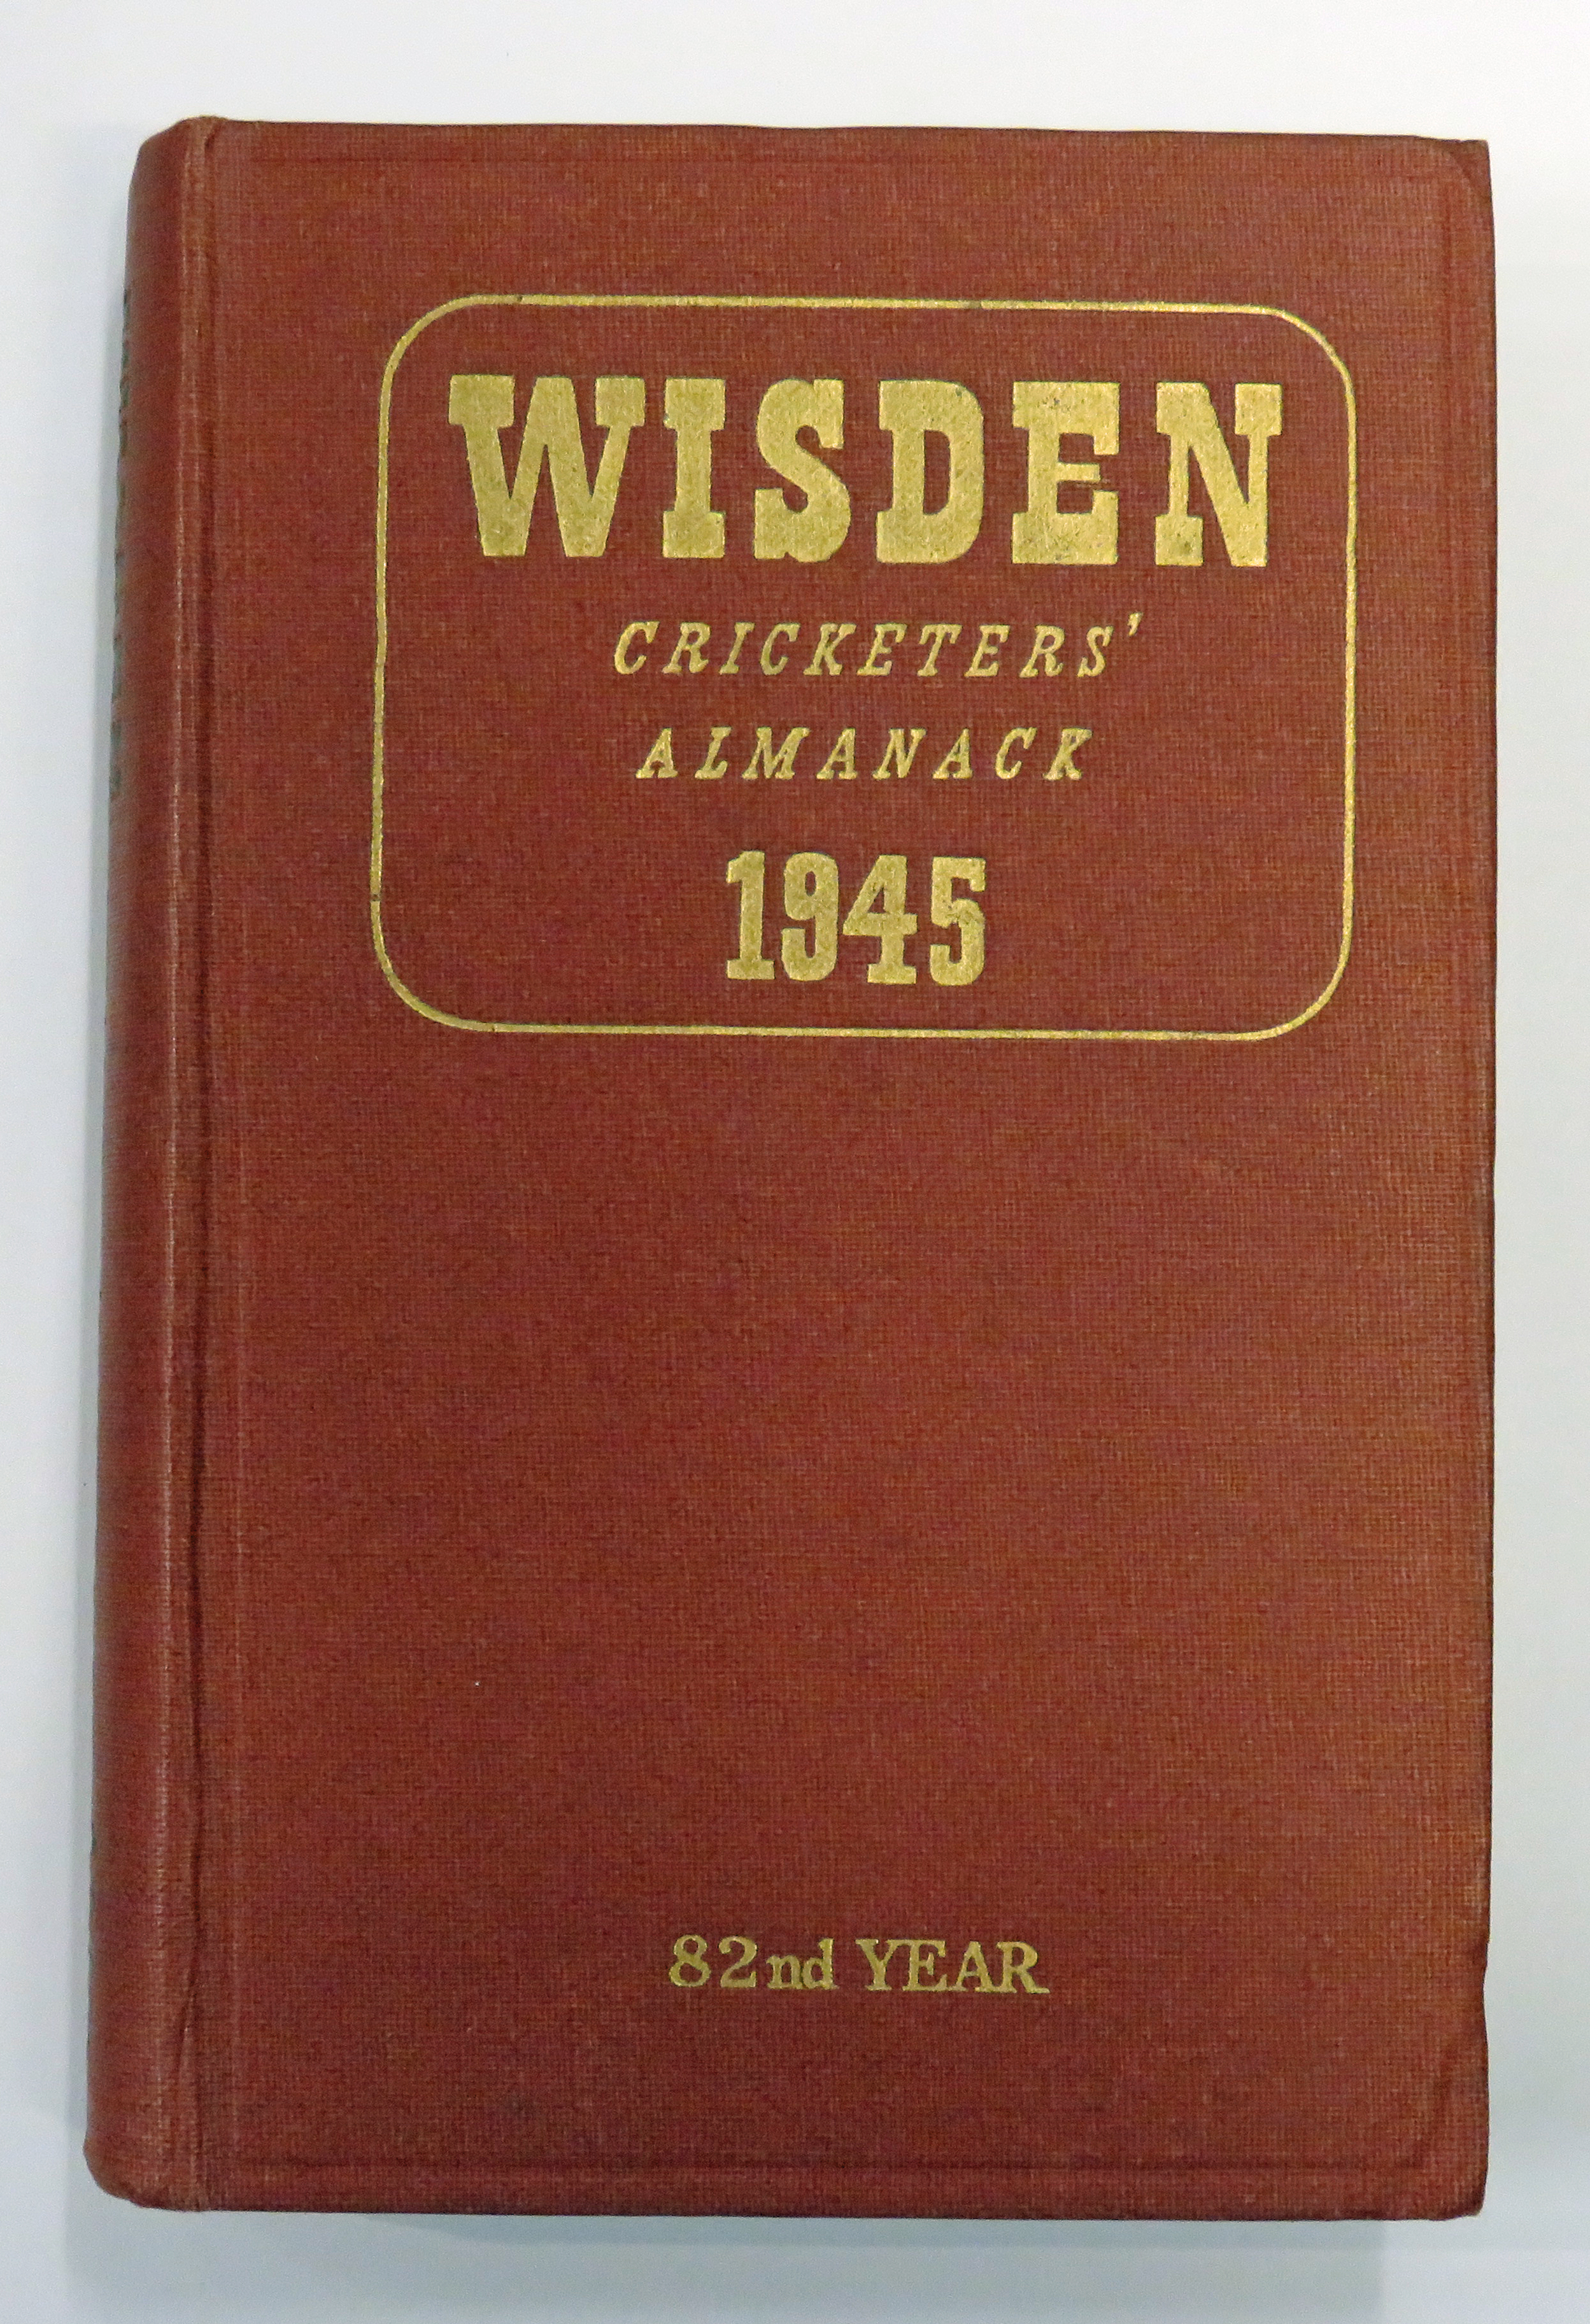 Wisden Cricketers' Almanack 1945